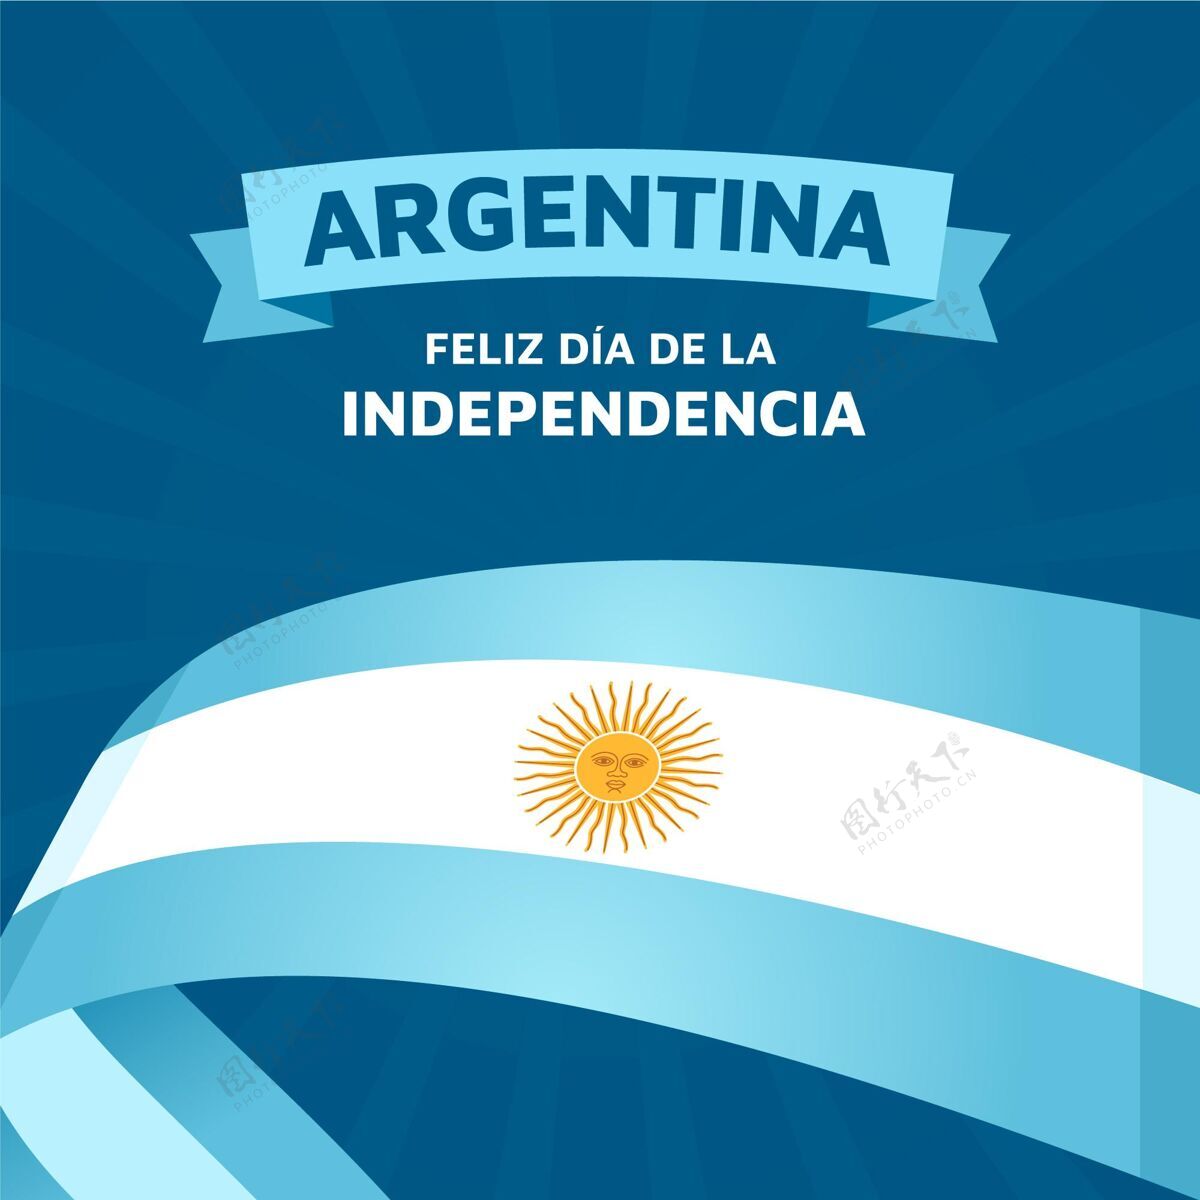 公共假日阿根廷独立宣言9号公寓五月二十五日活动阿根廷